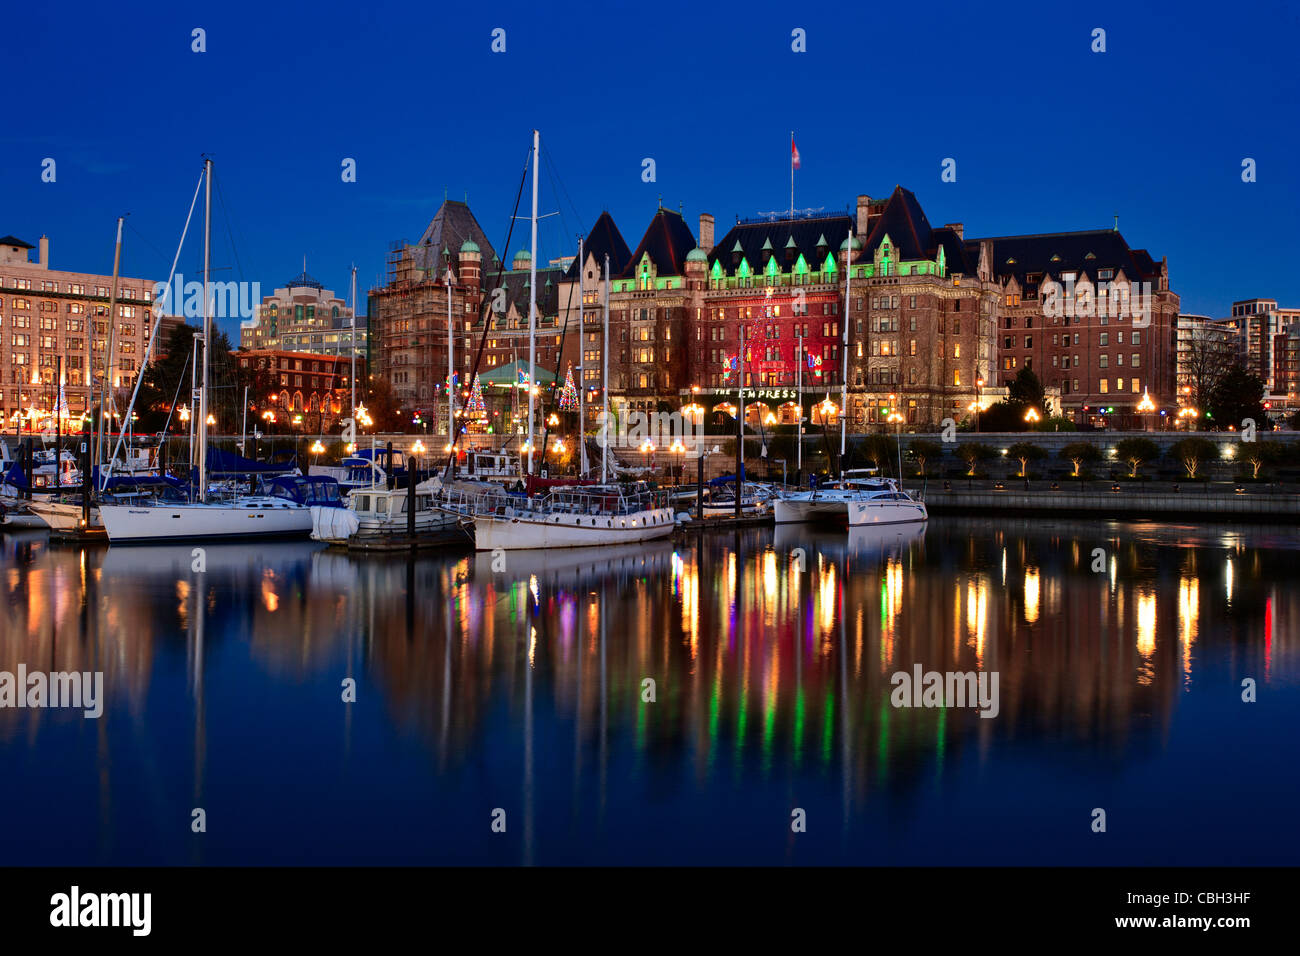 Fairmont Empress Hotel beleuchtet mit Weihnachtsbeleuchtung-Victoria, British Columbia, Kanada. Stockfoto